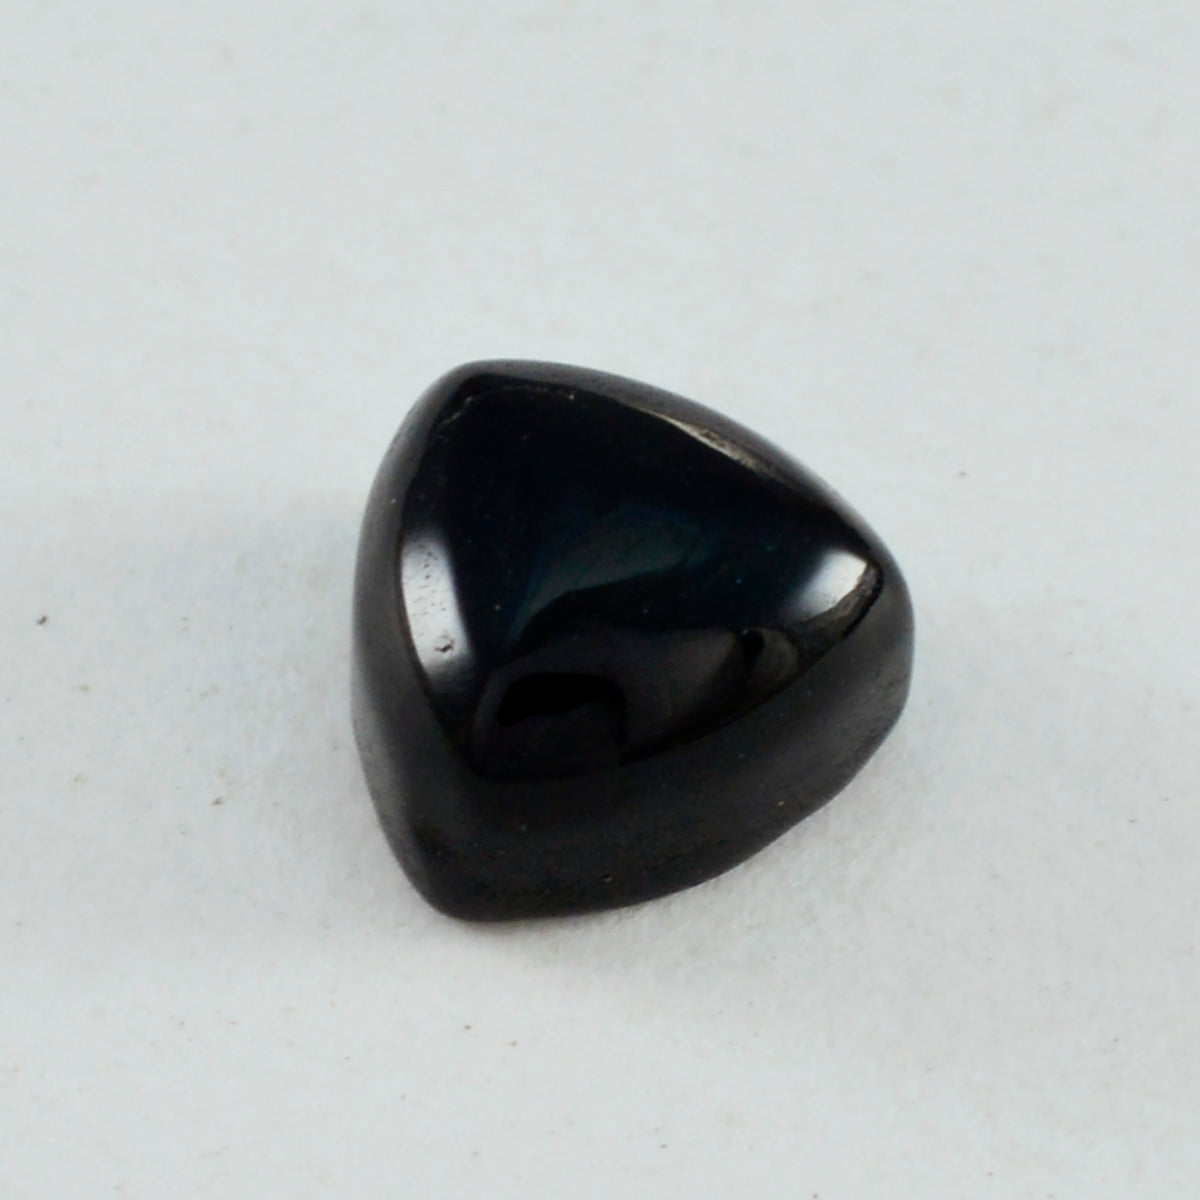 Riyogems 1 Stück schwarzer Onyx-Cabochon, 15 x 15 mm, Billionenform, attraktiver Qualitäts-Edelstein